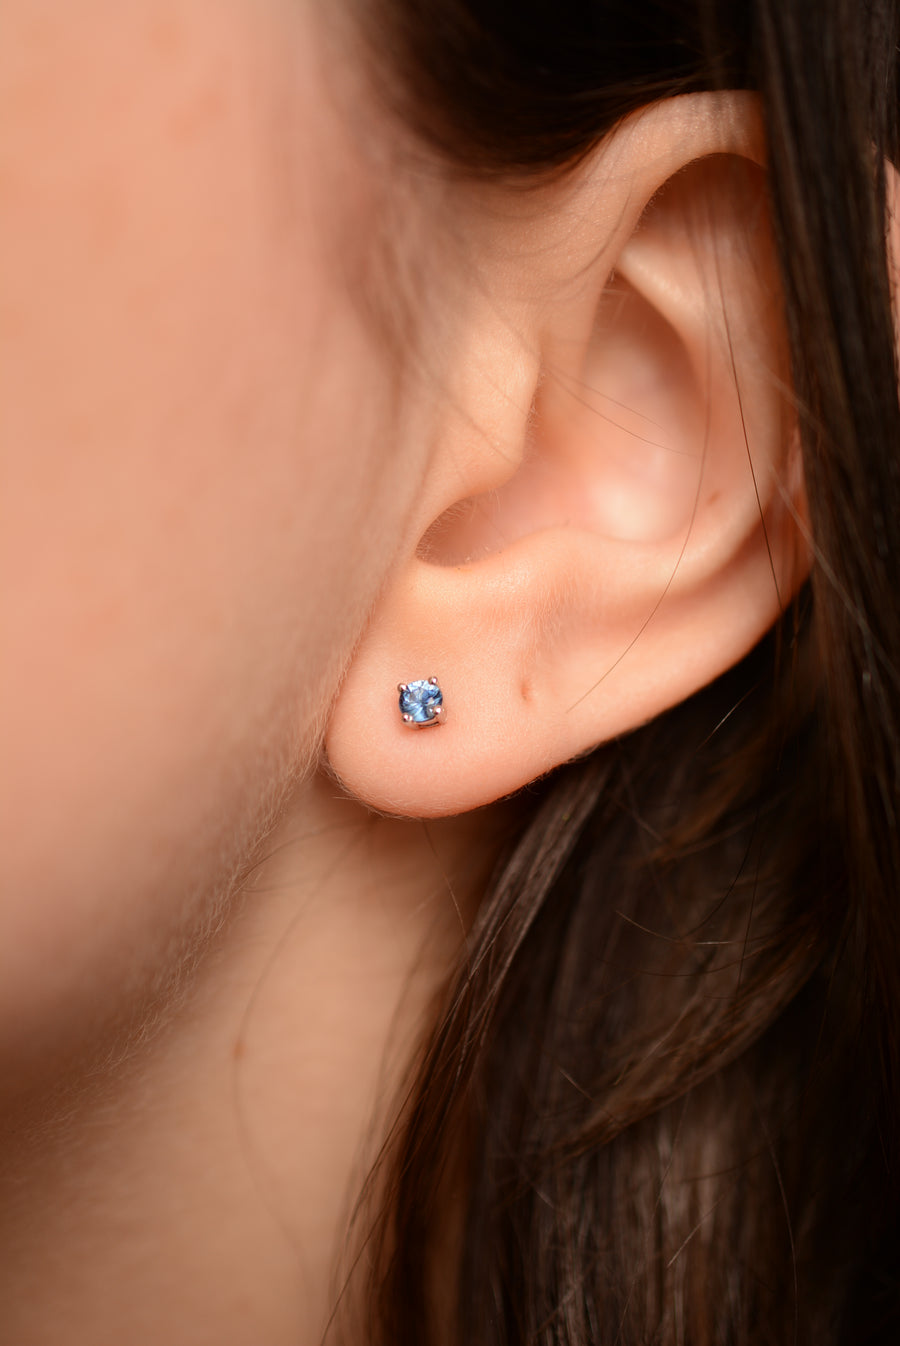 Australian Sapphire Stud Earrings